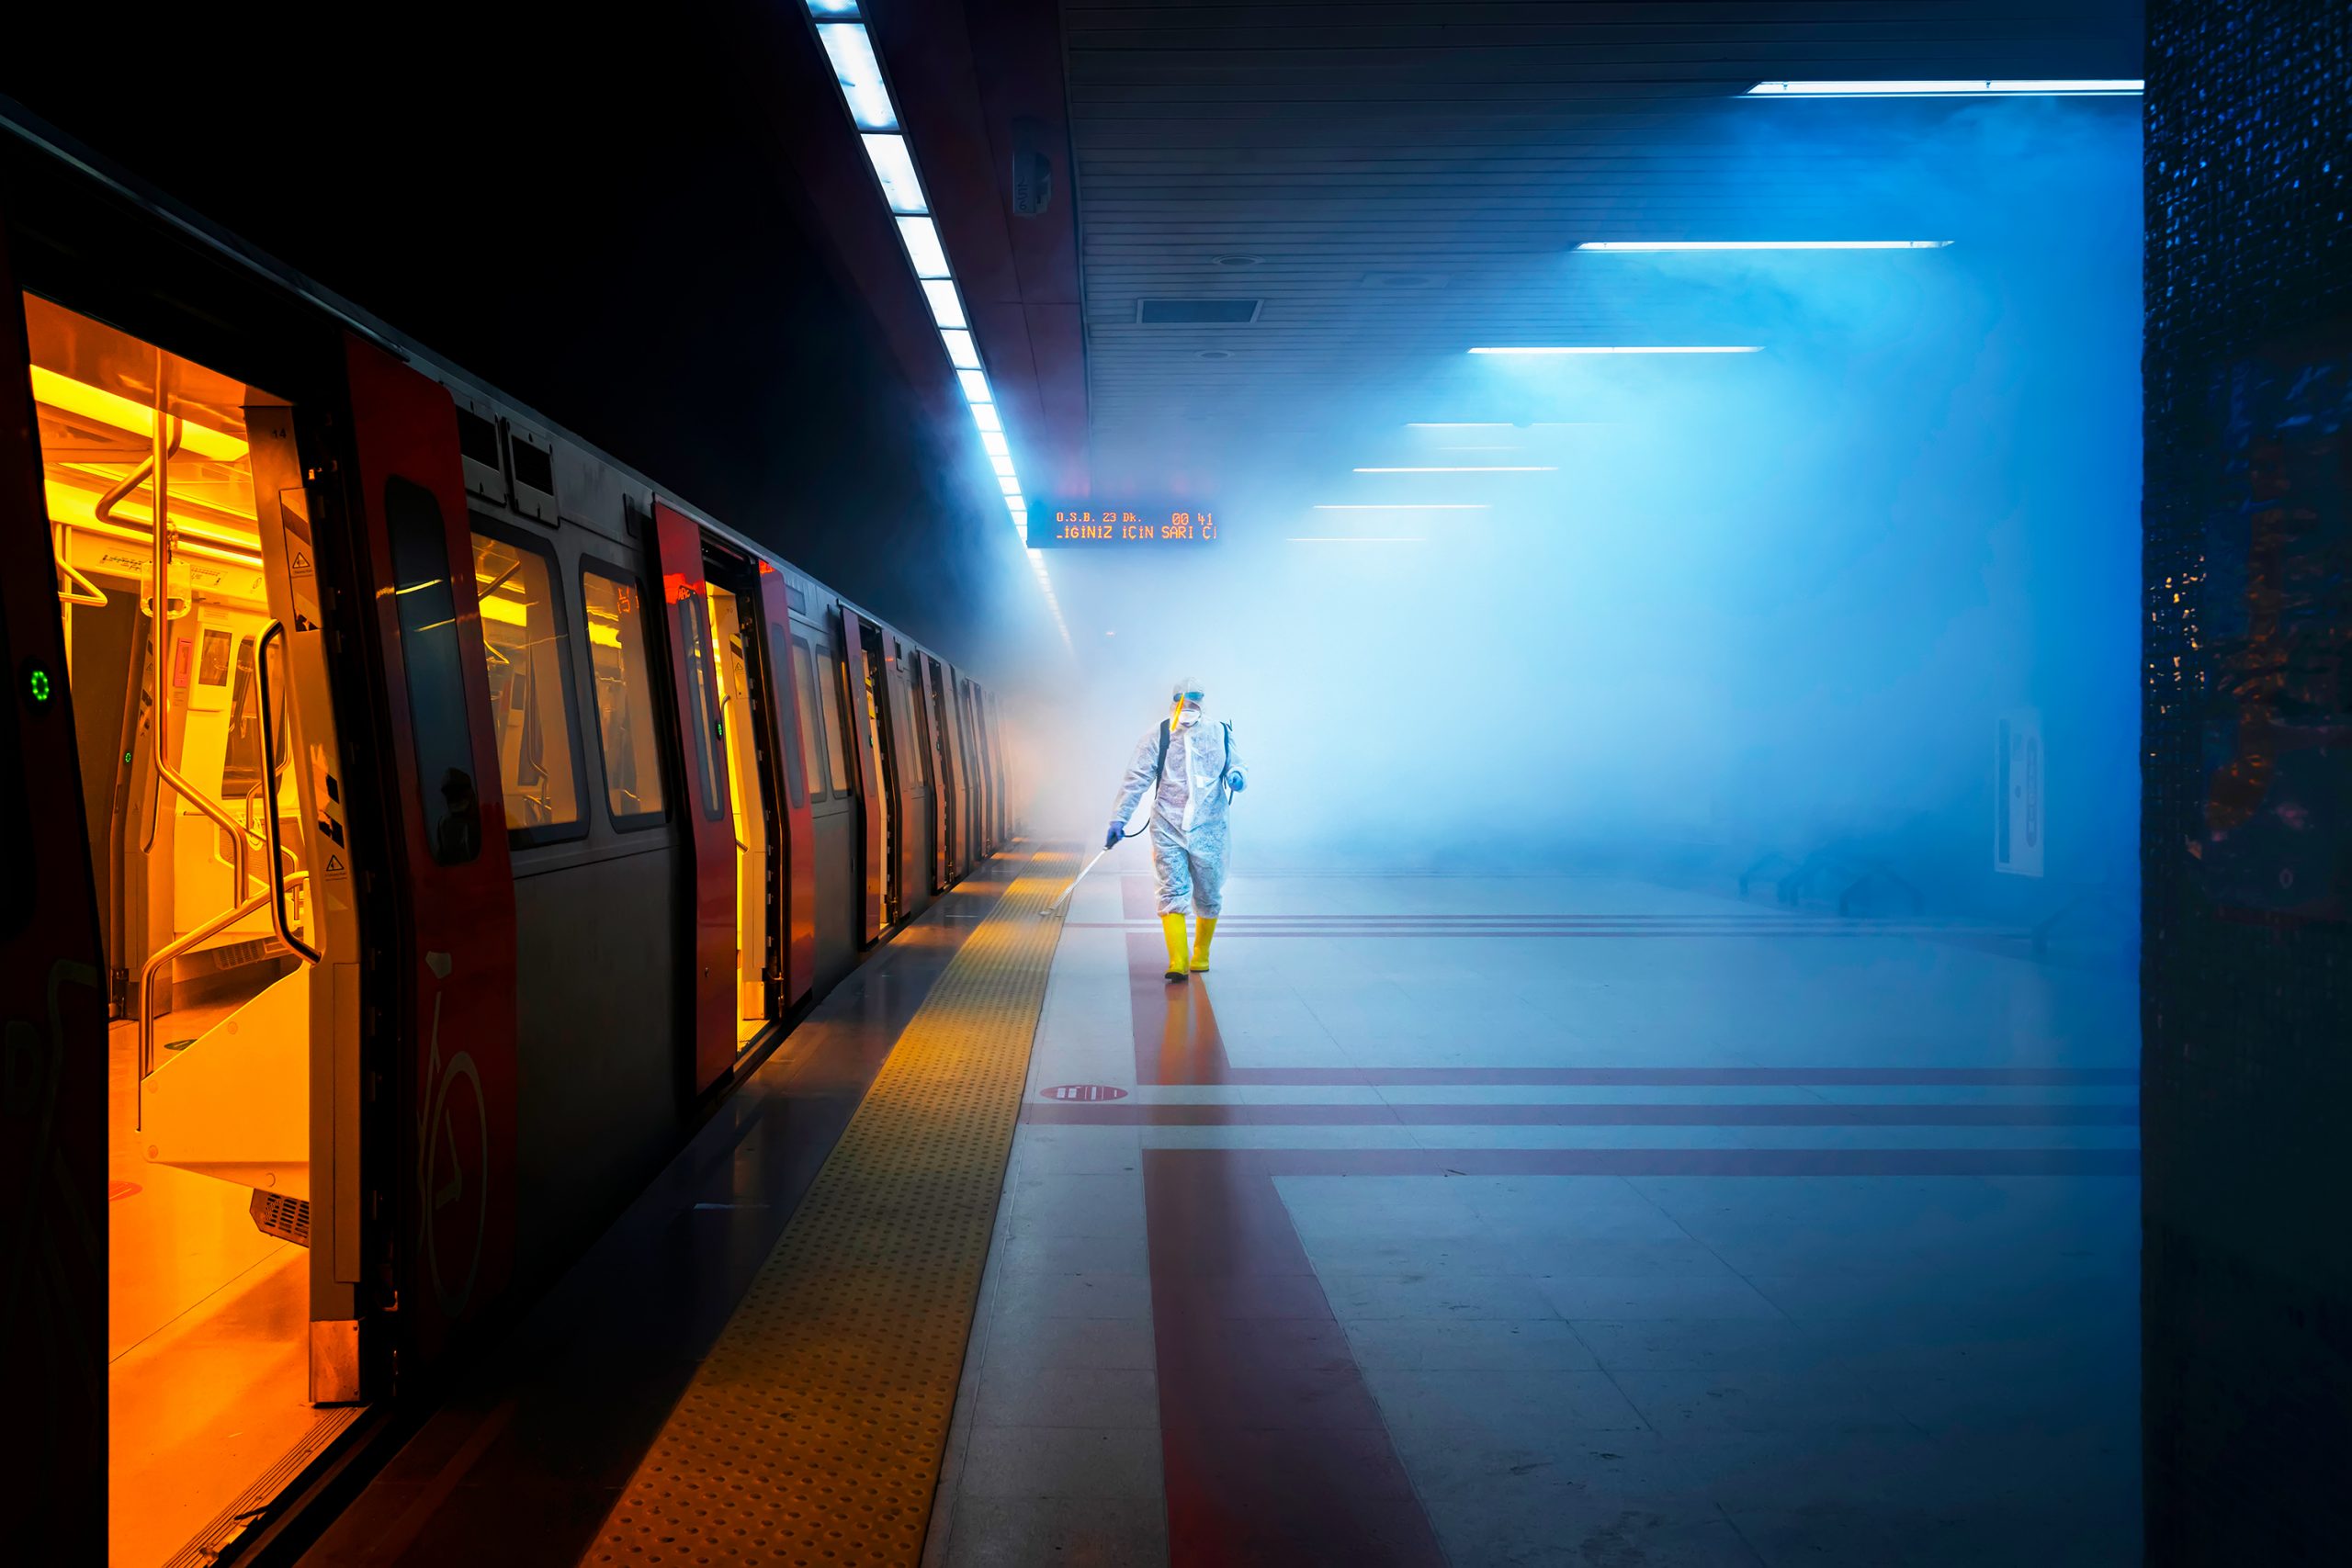 MAnn in Schutzkleidung desinfiziert Bahnsteig einer U-Bahn